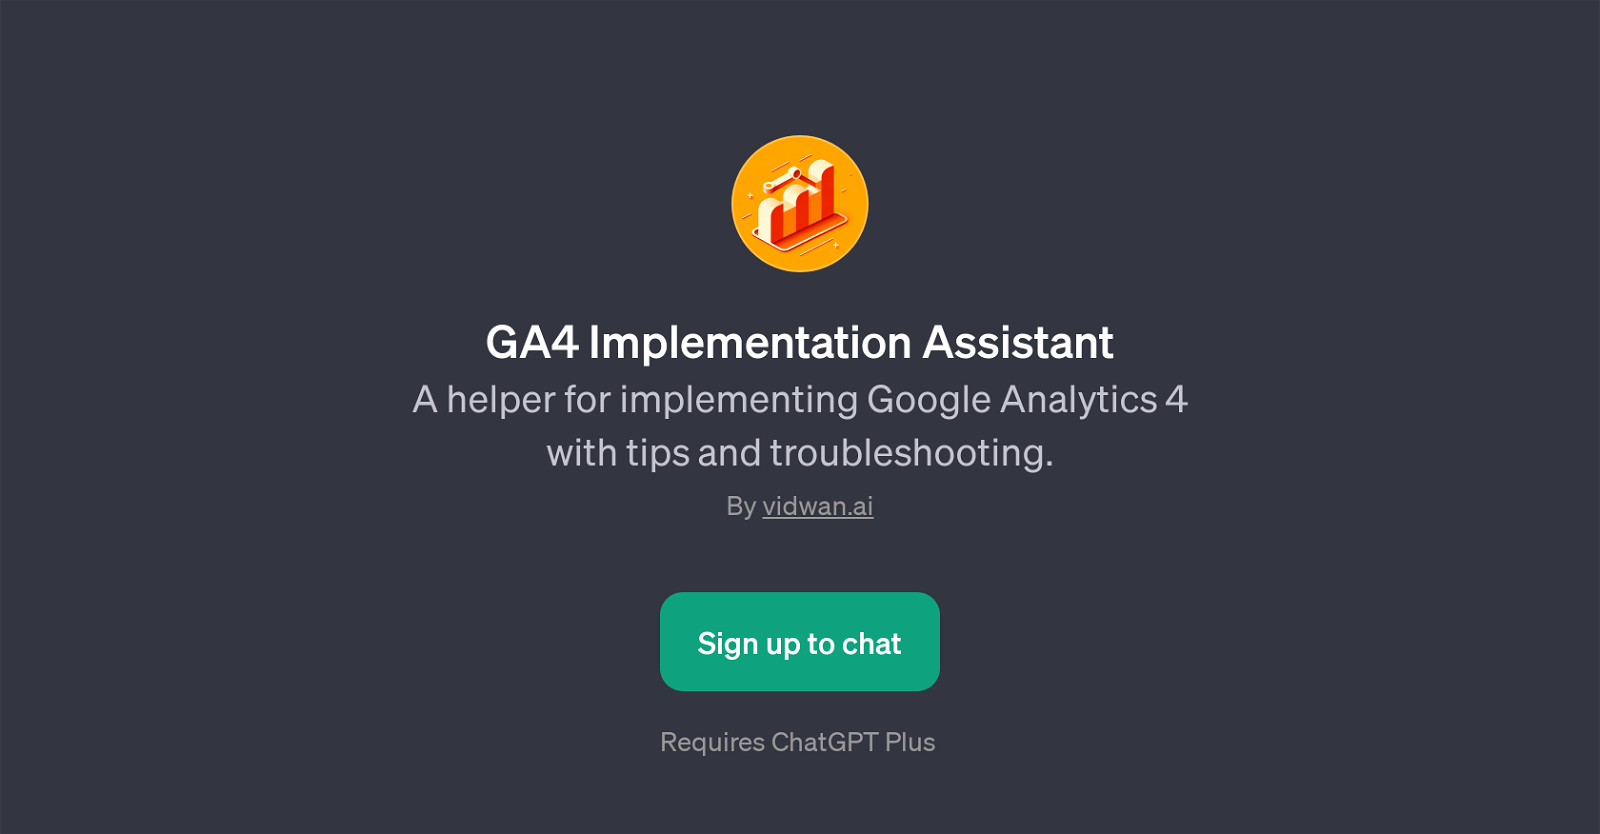 GA4 Implementation Assistant website